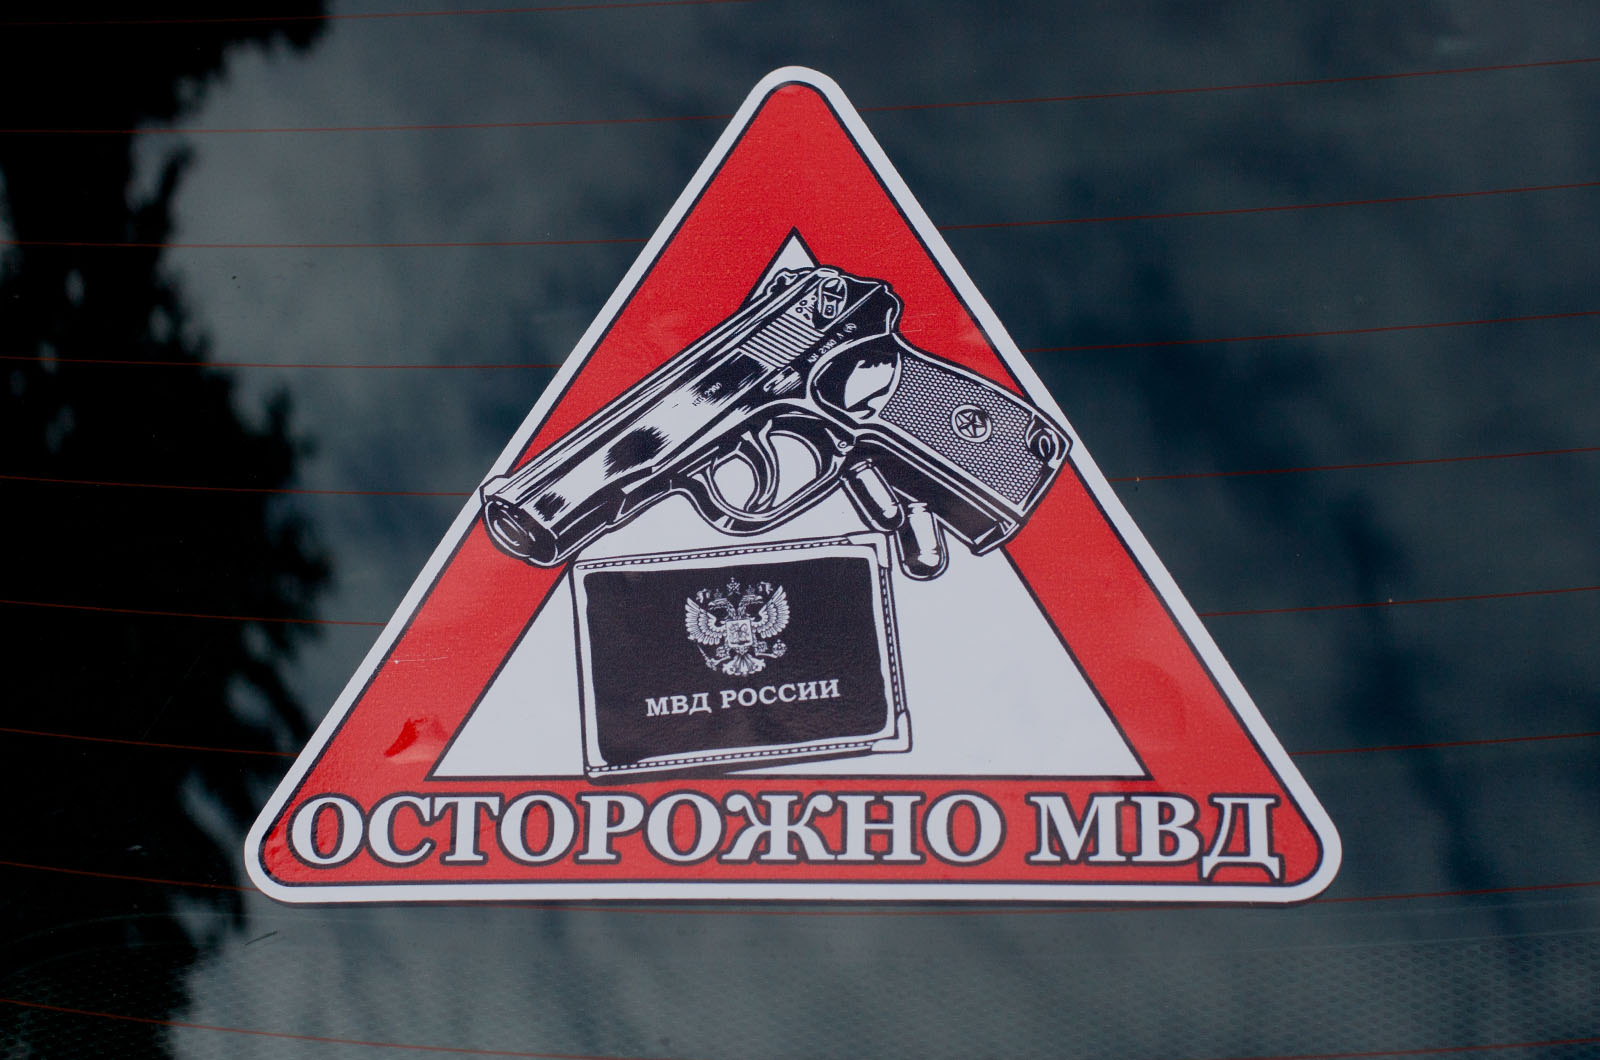 Наклейка автомобильная «Осторожно МВД»  